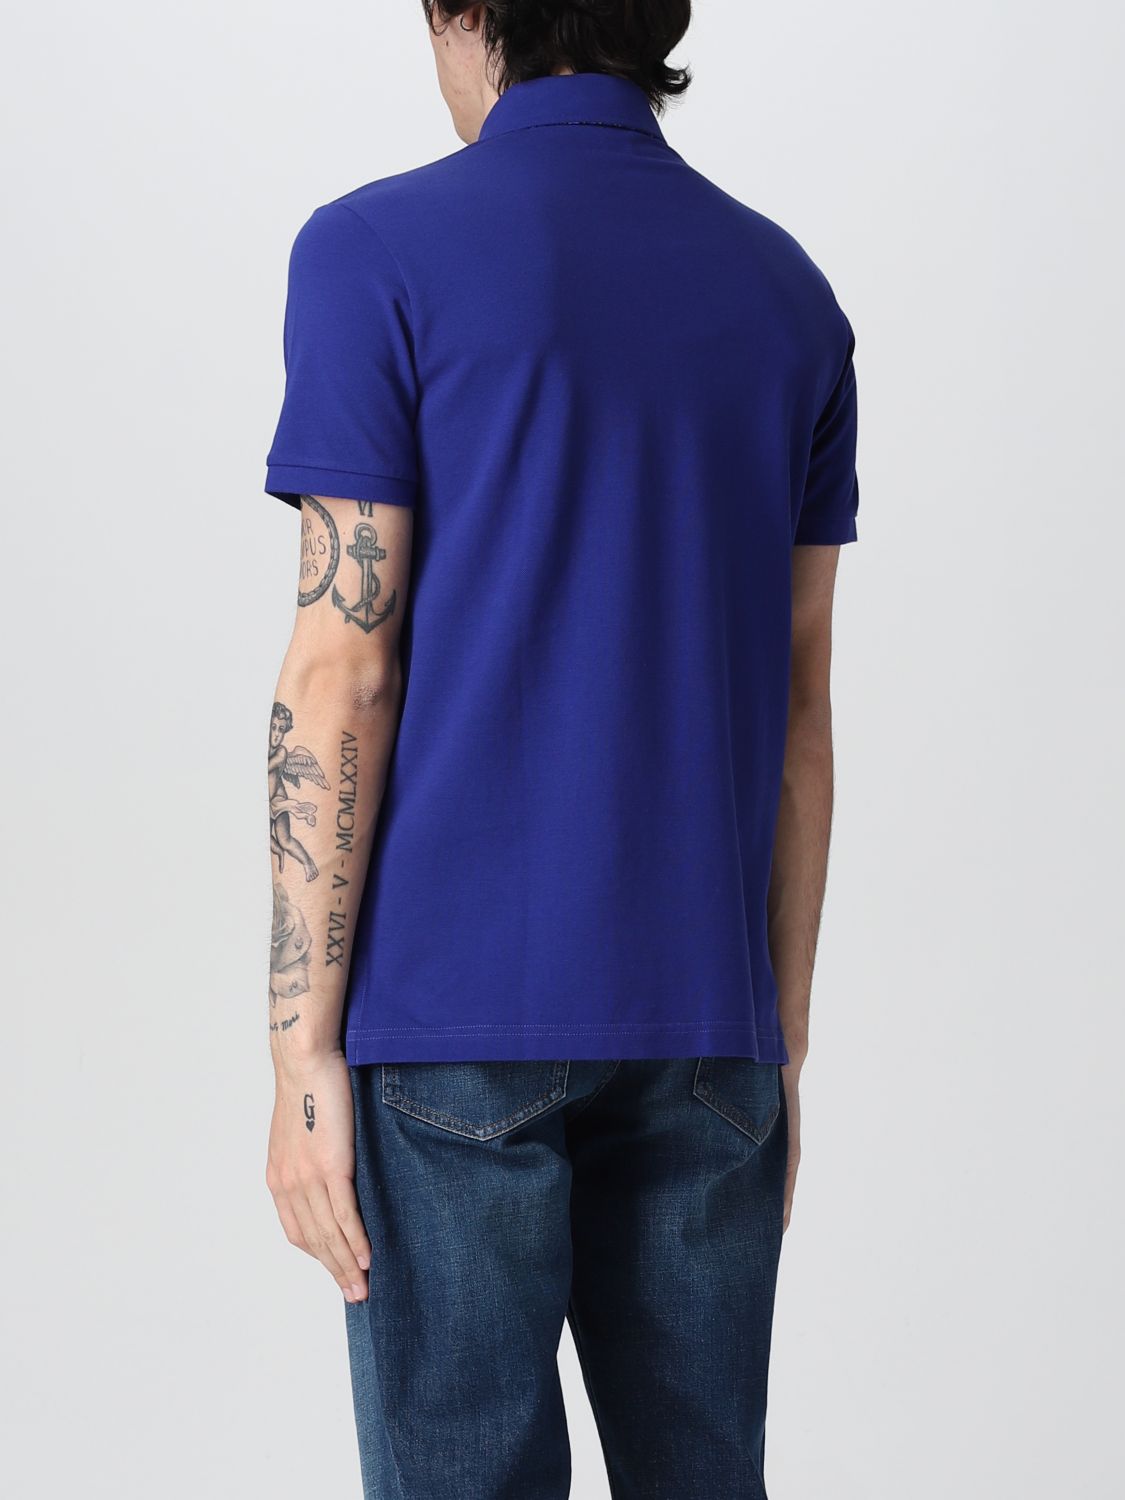 ETRO: cotton polo t-shirt with Pegasus - Blue 1 | Etro polo shirt ...